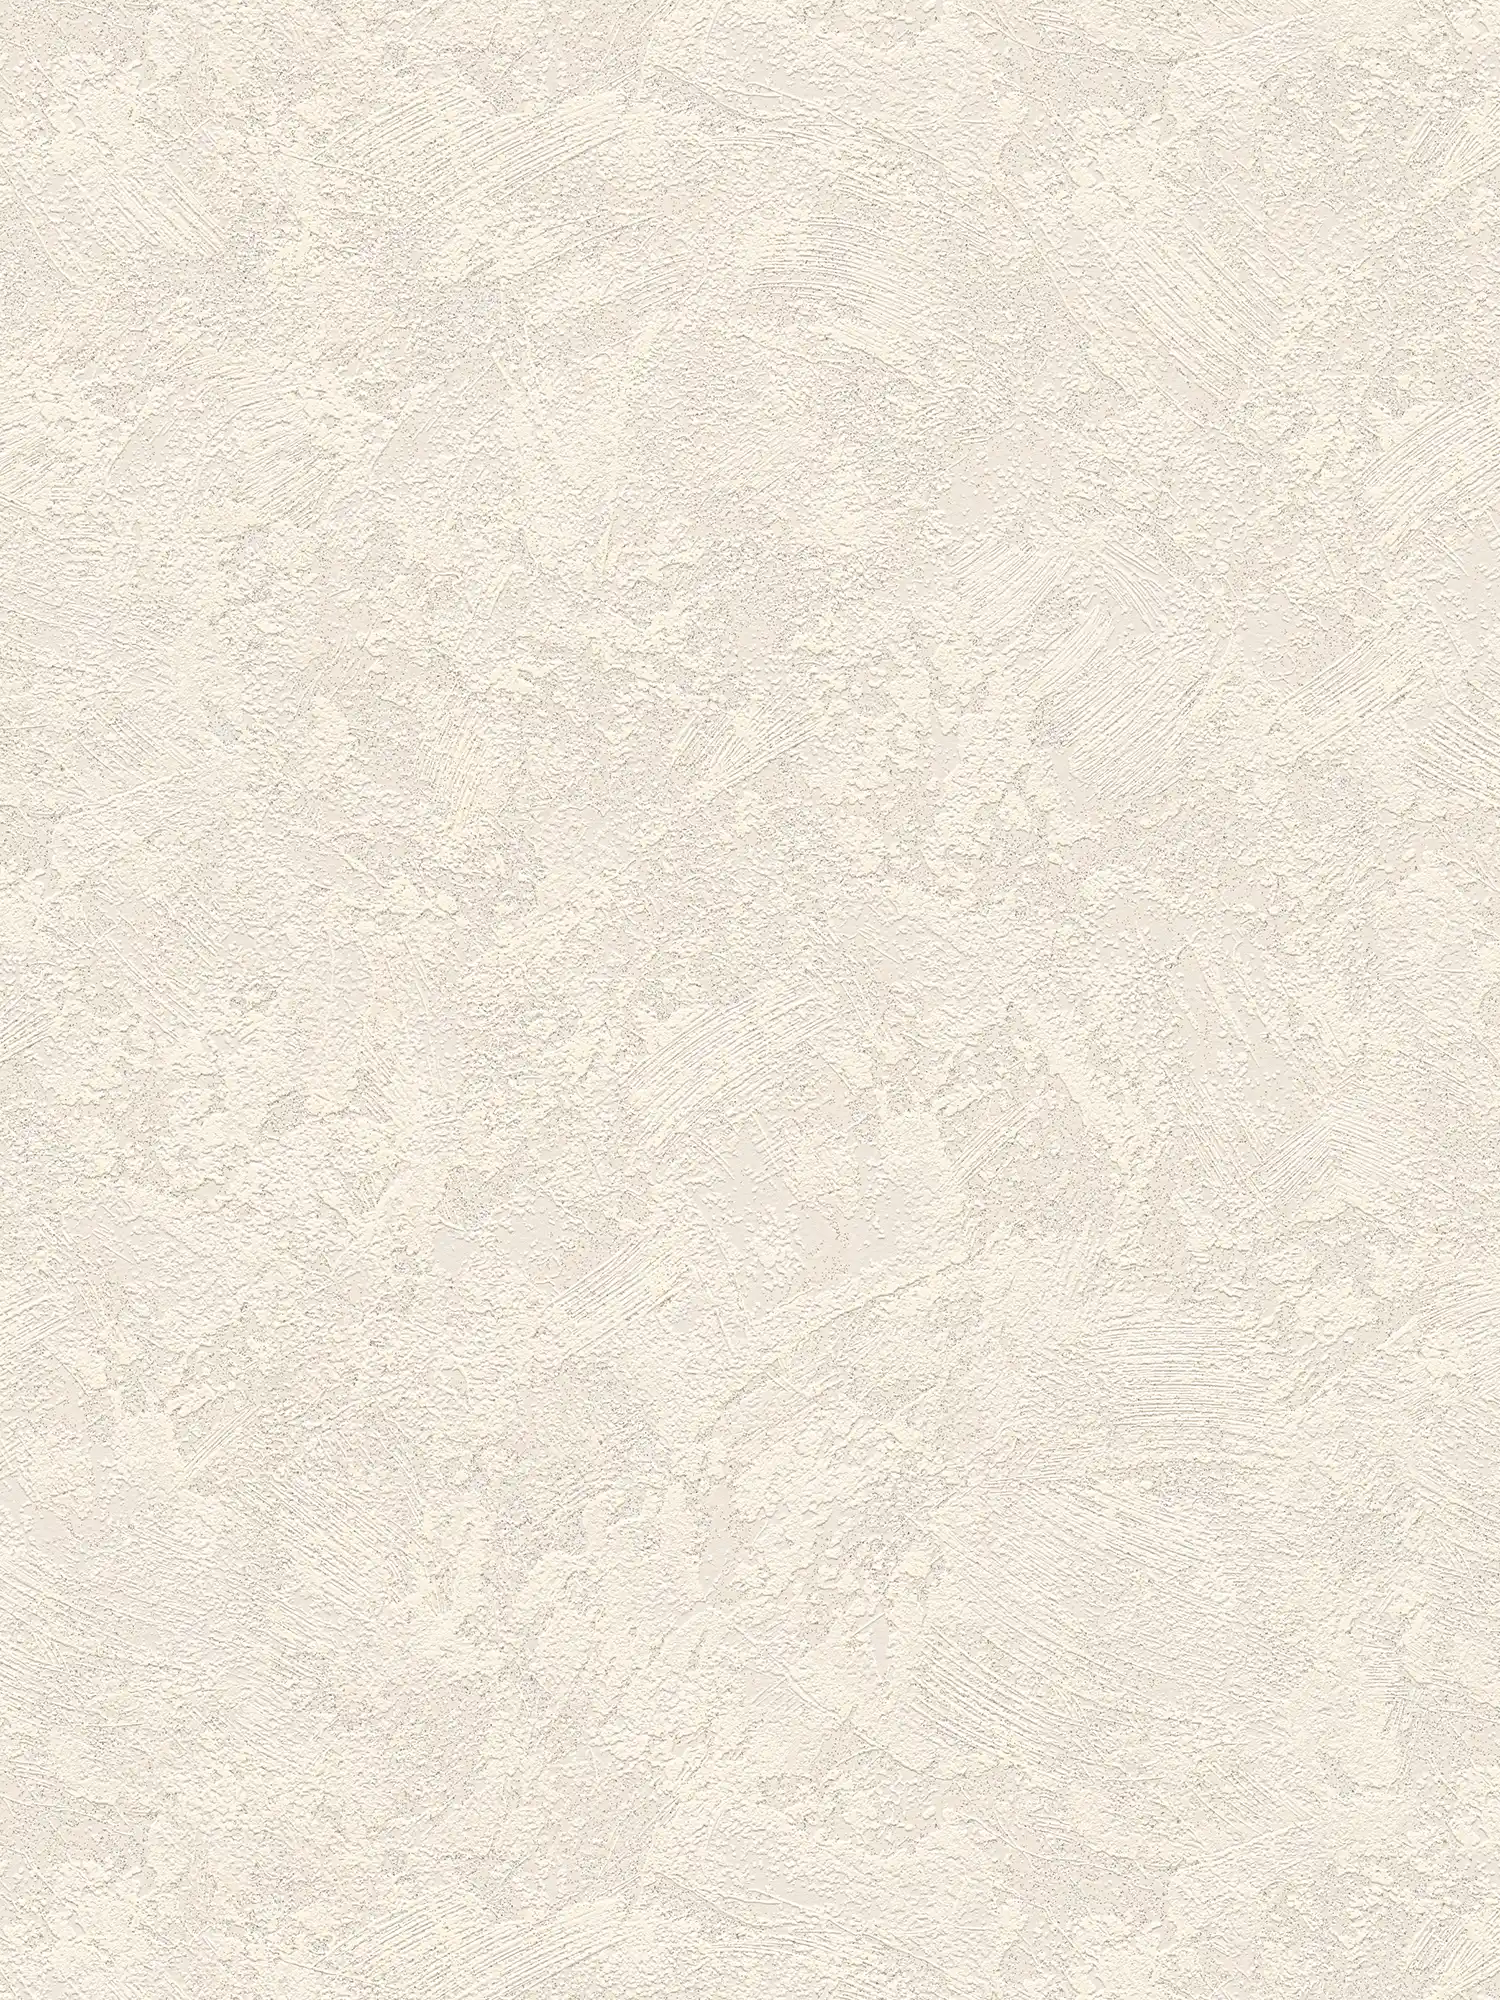 Carta da parati in tessuto non tessuto effetto gesso con tratteggio rustico - crema, grigio
